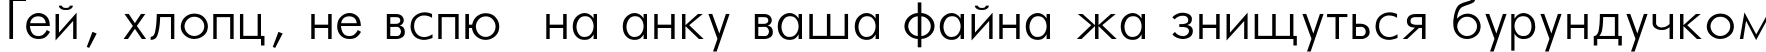 Пример написания шрифтом Futura_Light-Normal текста на украинском